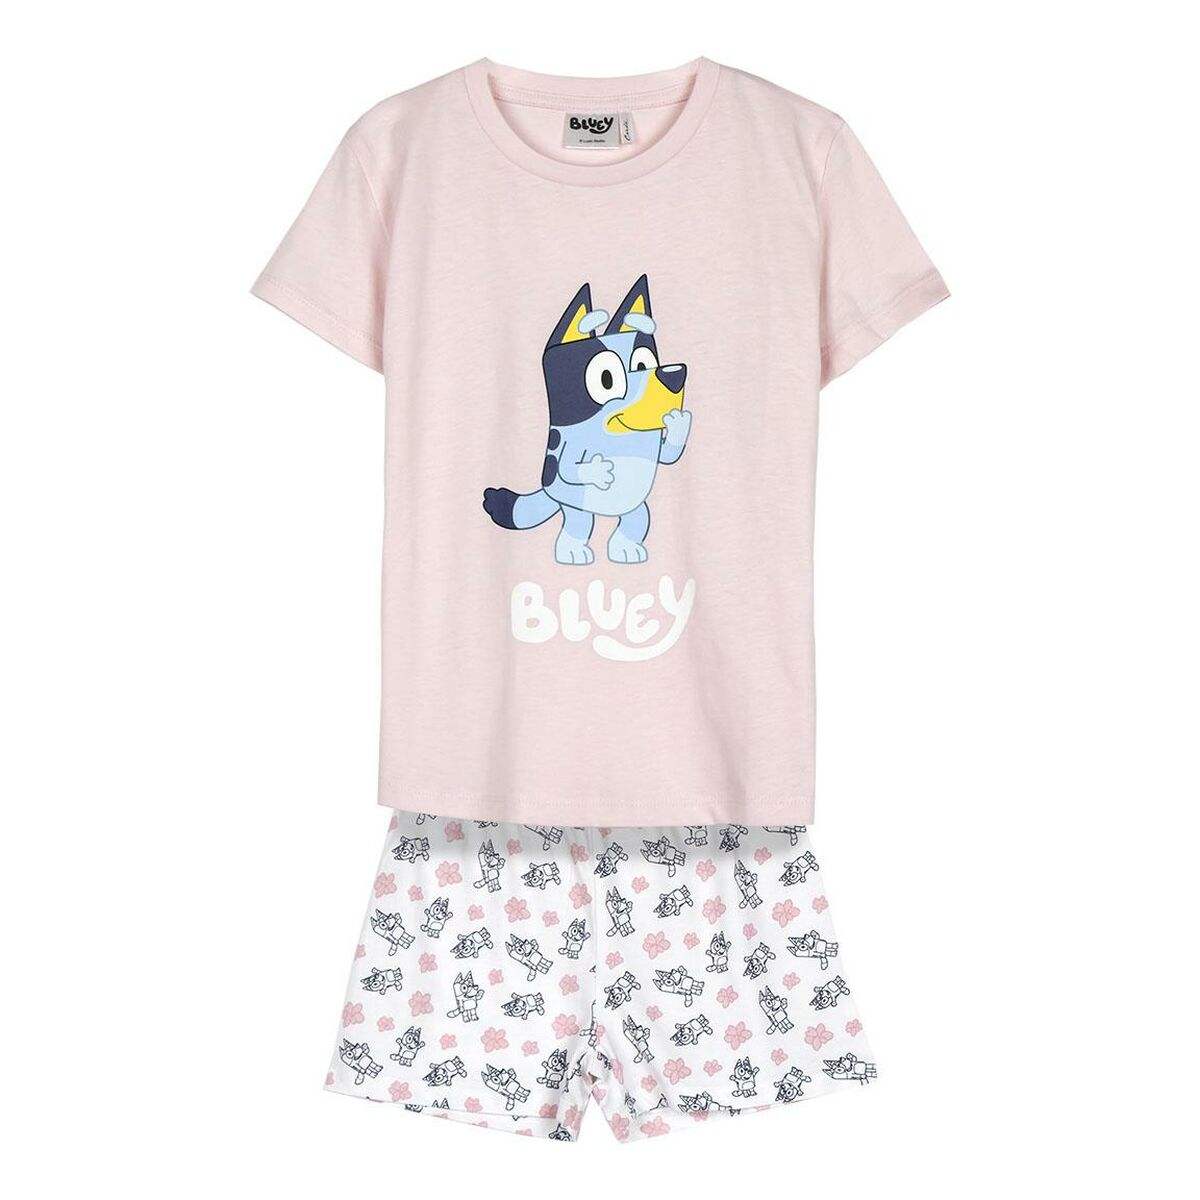 Schlafanzug Für Kinder Bluey Rosa